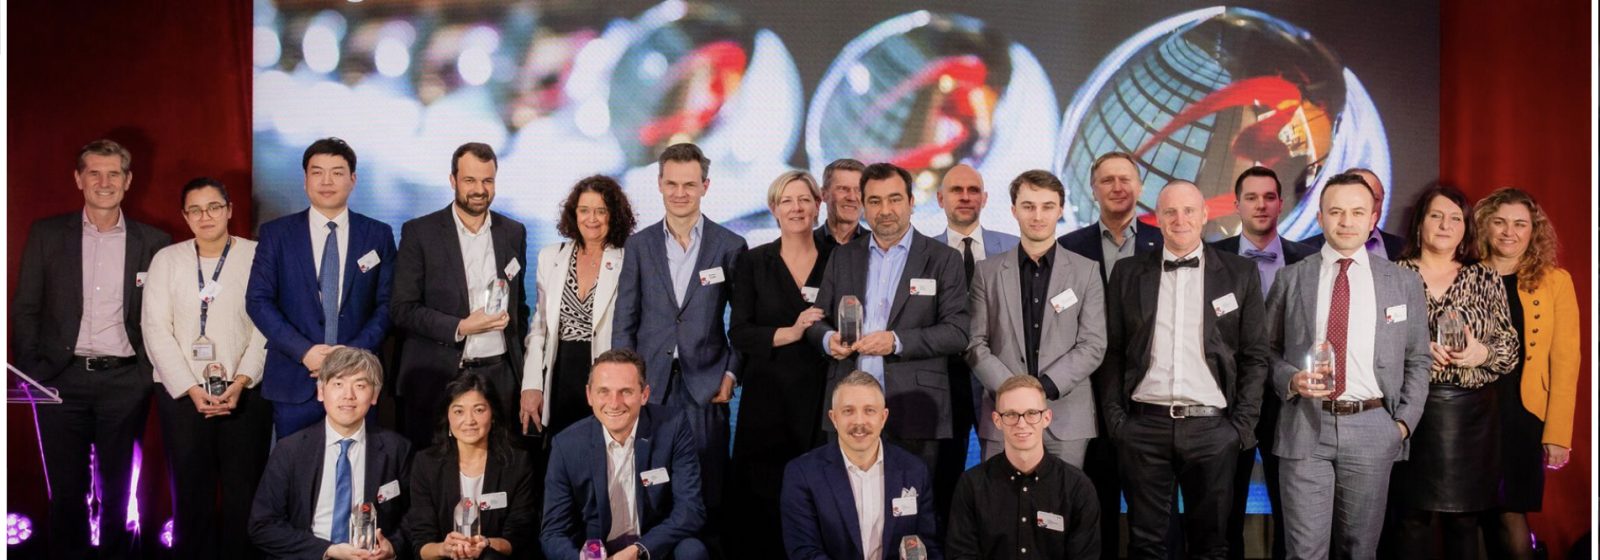 De winnaars van de Brussels Airport Aviation Awards